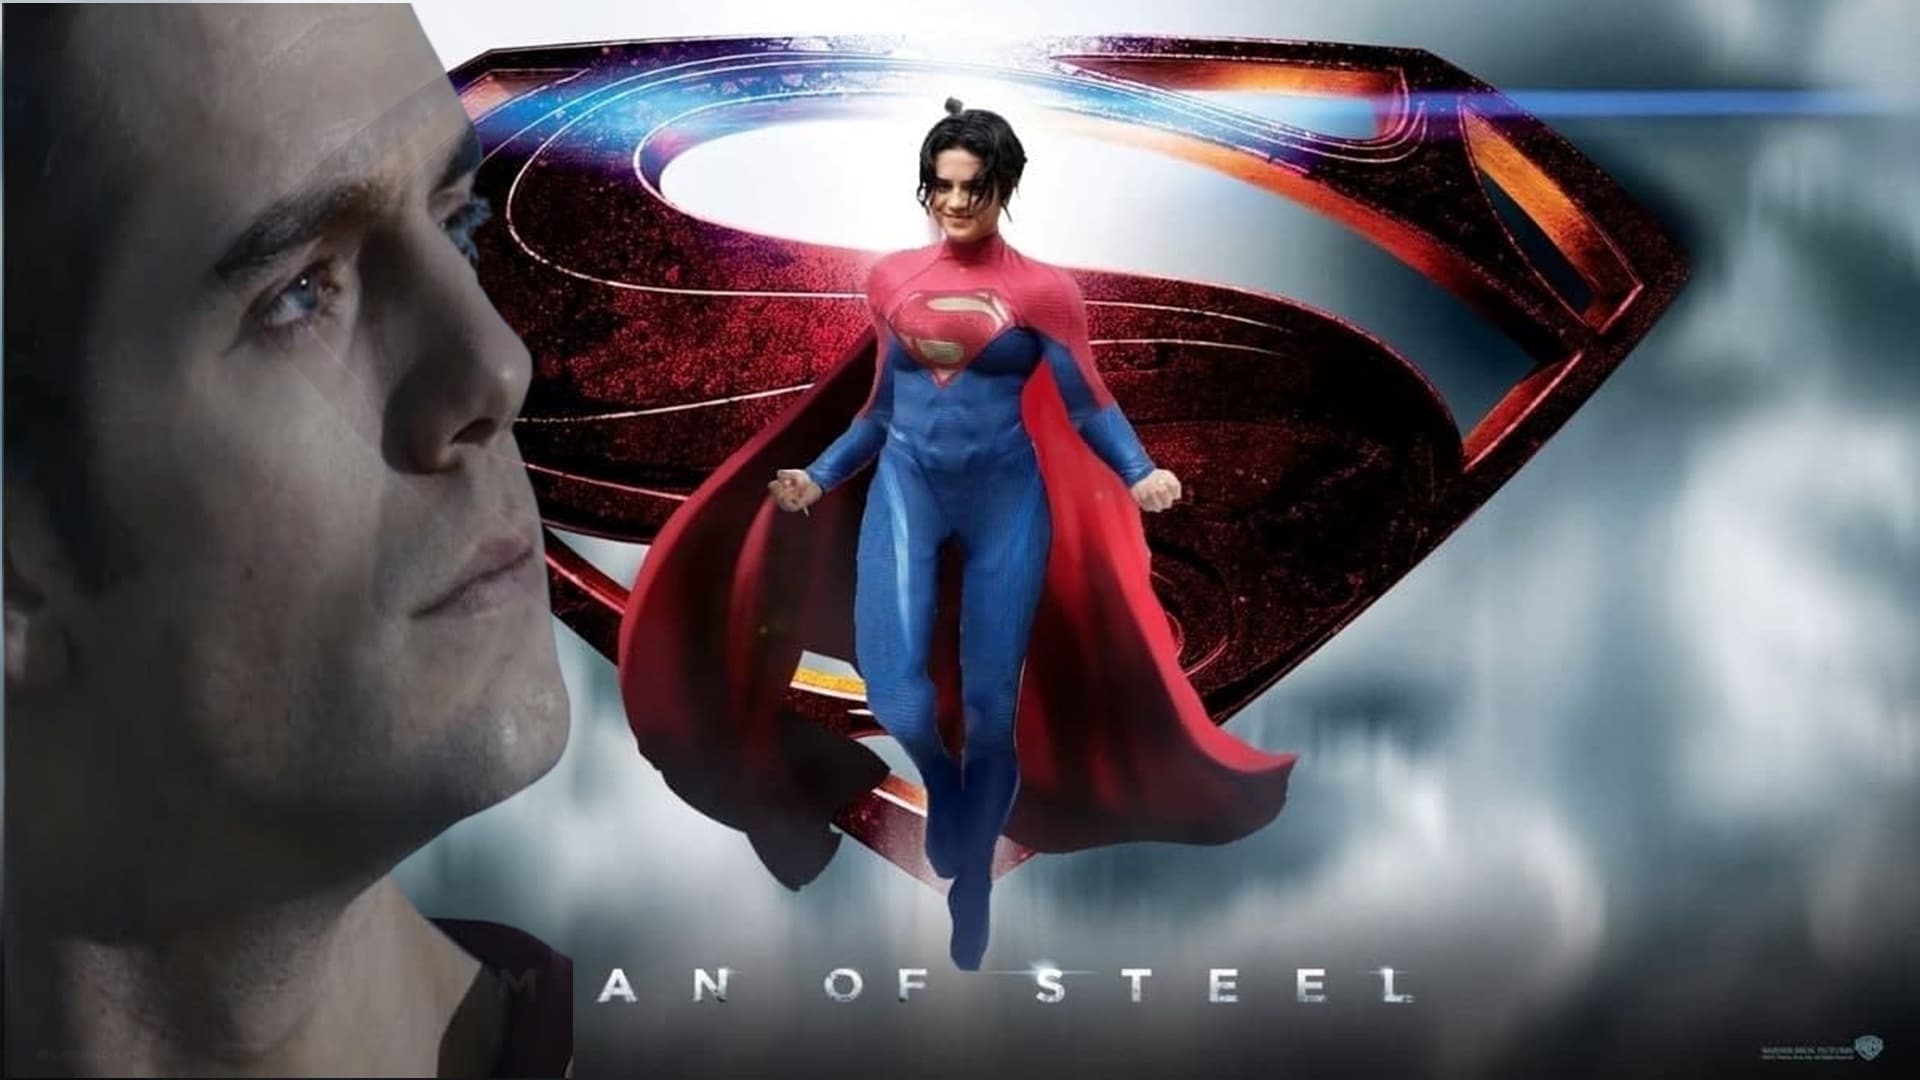 La secuela de Man of Steel será protagonizada por una mujer, según rumor, GamersRD